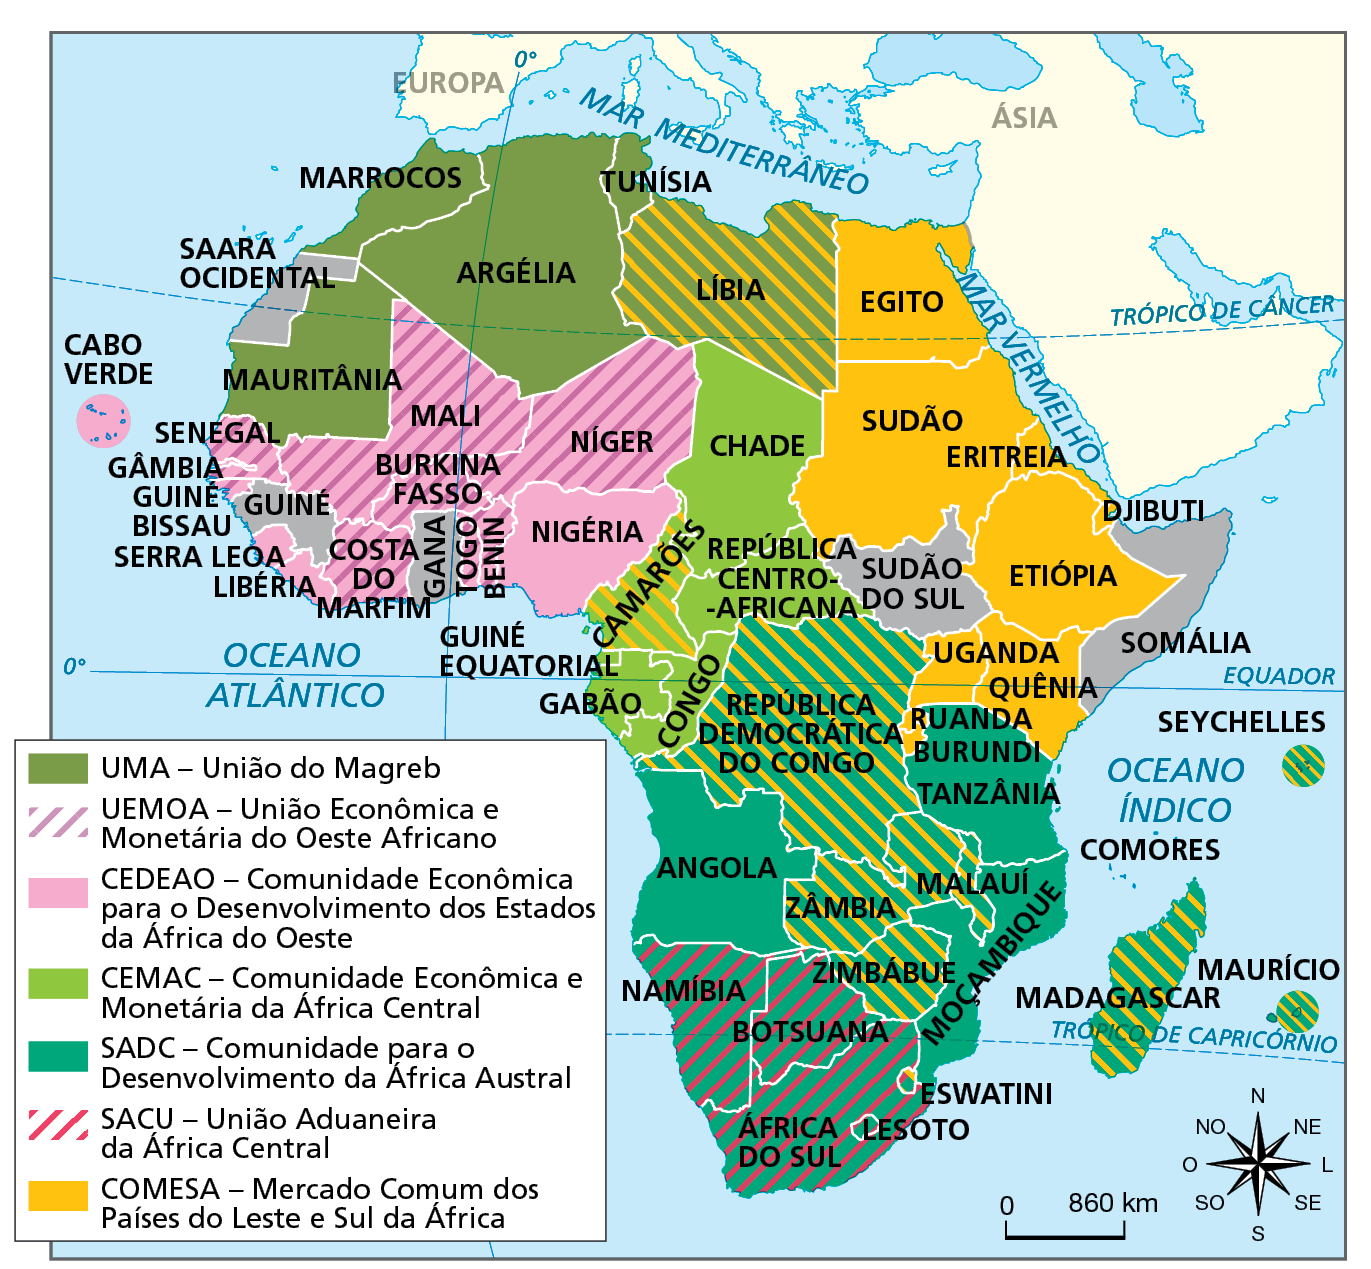 Mapa. África: organizações internacionais regionais econômicas - 2021.  Mapa político da África com a identificação dos países pertencentes as diferentes organizações internacionais regionais econômicas.  UMA – União do Magreb: Mauritânia, Marrocos, Argélia, Tunísia, Líbia.  UEMOA – União Econômica e Monetária do Oeste Africano: Mali, Burkina Fasso, Níger, Costa do Marfim, Togo, Benin, Senegal, Gâmbia, Guiné Bissau.  CEDEAO – Comunidade Econômica para o Desenvolvimento dos Estados da África do Oeste: Mali, Burkina Fasso, Níger, Nigéria, Benin, Togo, Costa do Marfim, Libéria, Serra Leoa, Guiné Bissau, Guiné, Gâmbia, Senegal, Cabo Verde.   CEMAC – Comunidade Econômica e Monetária da África Central: Chade, Camarões, República Centro-Africana, Congo, Gabão, Guiné Equatorial. SADC – Comunidade para o Desenvolvimento da África Austral: República Democrática do Congo, Tanzânia, Angola, Moçambique, Zimbábue, Zâmbia, Malauí, Namíbia, Botsuana, África do Sul, Lesoto, Eswatini, Madagascar, Maurício, Seychelles.  SACU – União Aduaneira da África Central: Namíbia, Botsuana, África do Sul, Lesoto.  COMESA – Mercado Comum dos Países do Leste e Sul da África: Líbia, Egito, Sudão, Eritreia, Etiópia, Uganda, Quênia, Ruanda, Burundi, Madagascar, Maurício, Seychelles, República Democrática do Congo, Zimbábue, Zâmbia, Malauí, Lesoto, Camarões.  Na parte de baixo, à direita, rosa dos ventos e escala de 0 a 860 quilômetros.